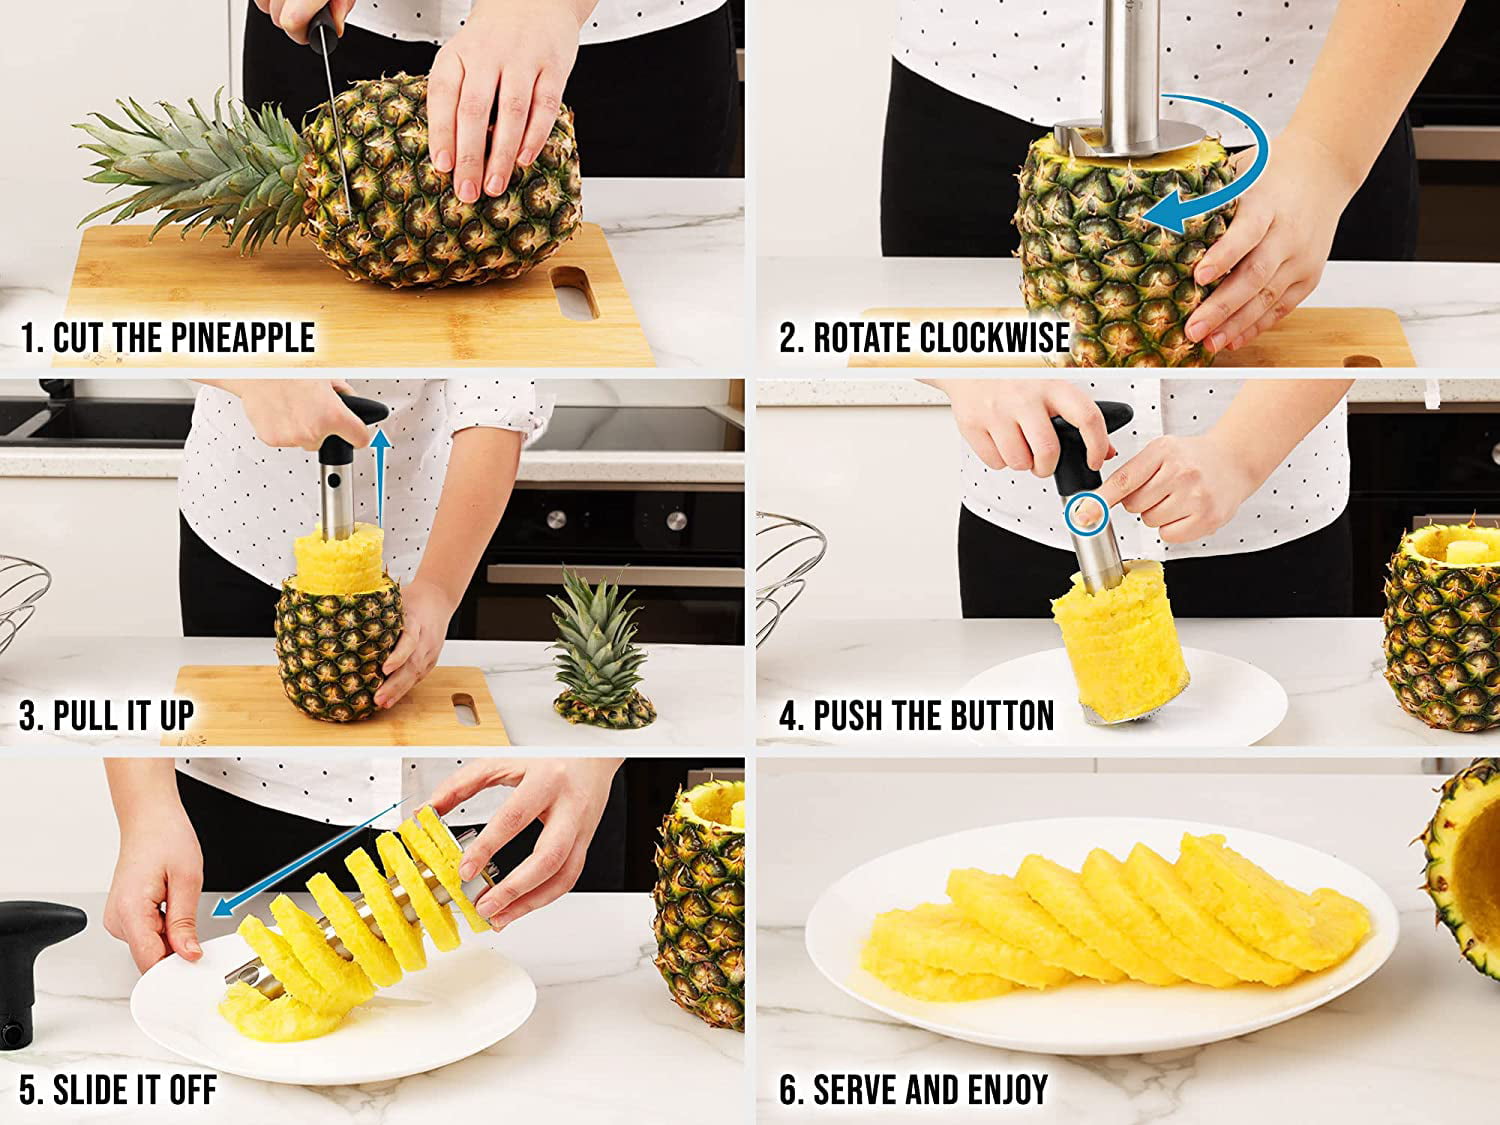 Norpro Pineapple Corer & Slicer